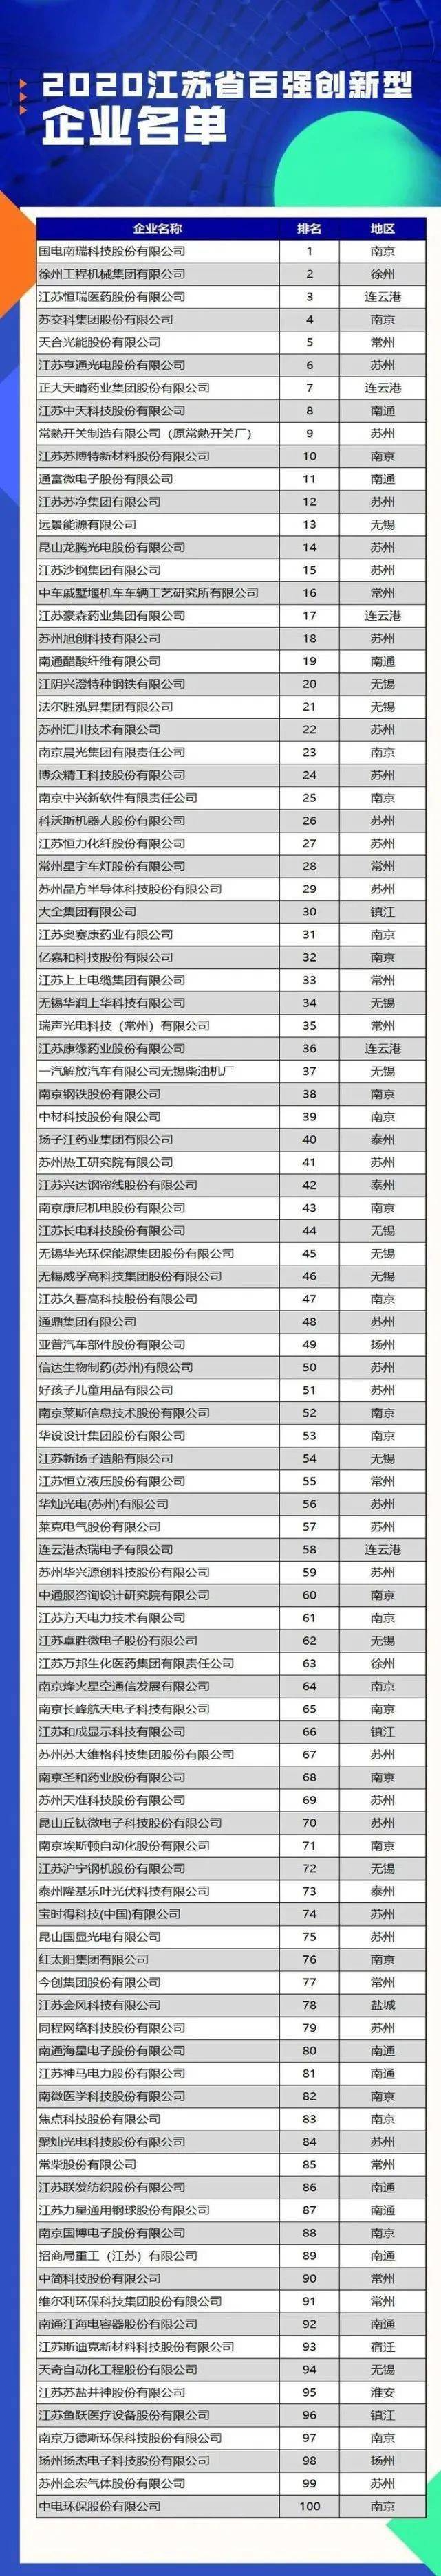 喜LOL比赛赌注平台讯 恒力液压荣登2021中国新经济企业500强 跃升至第68位